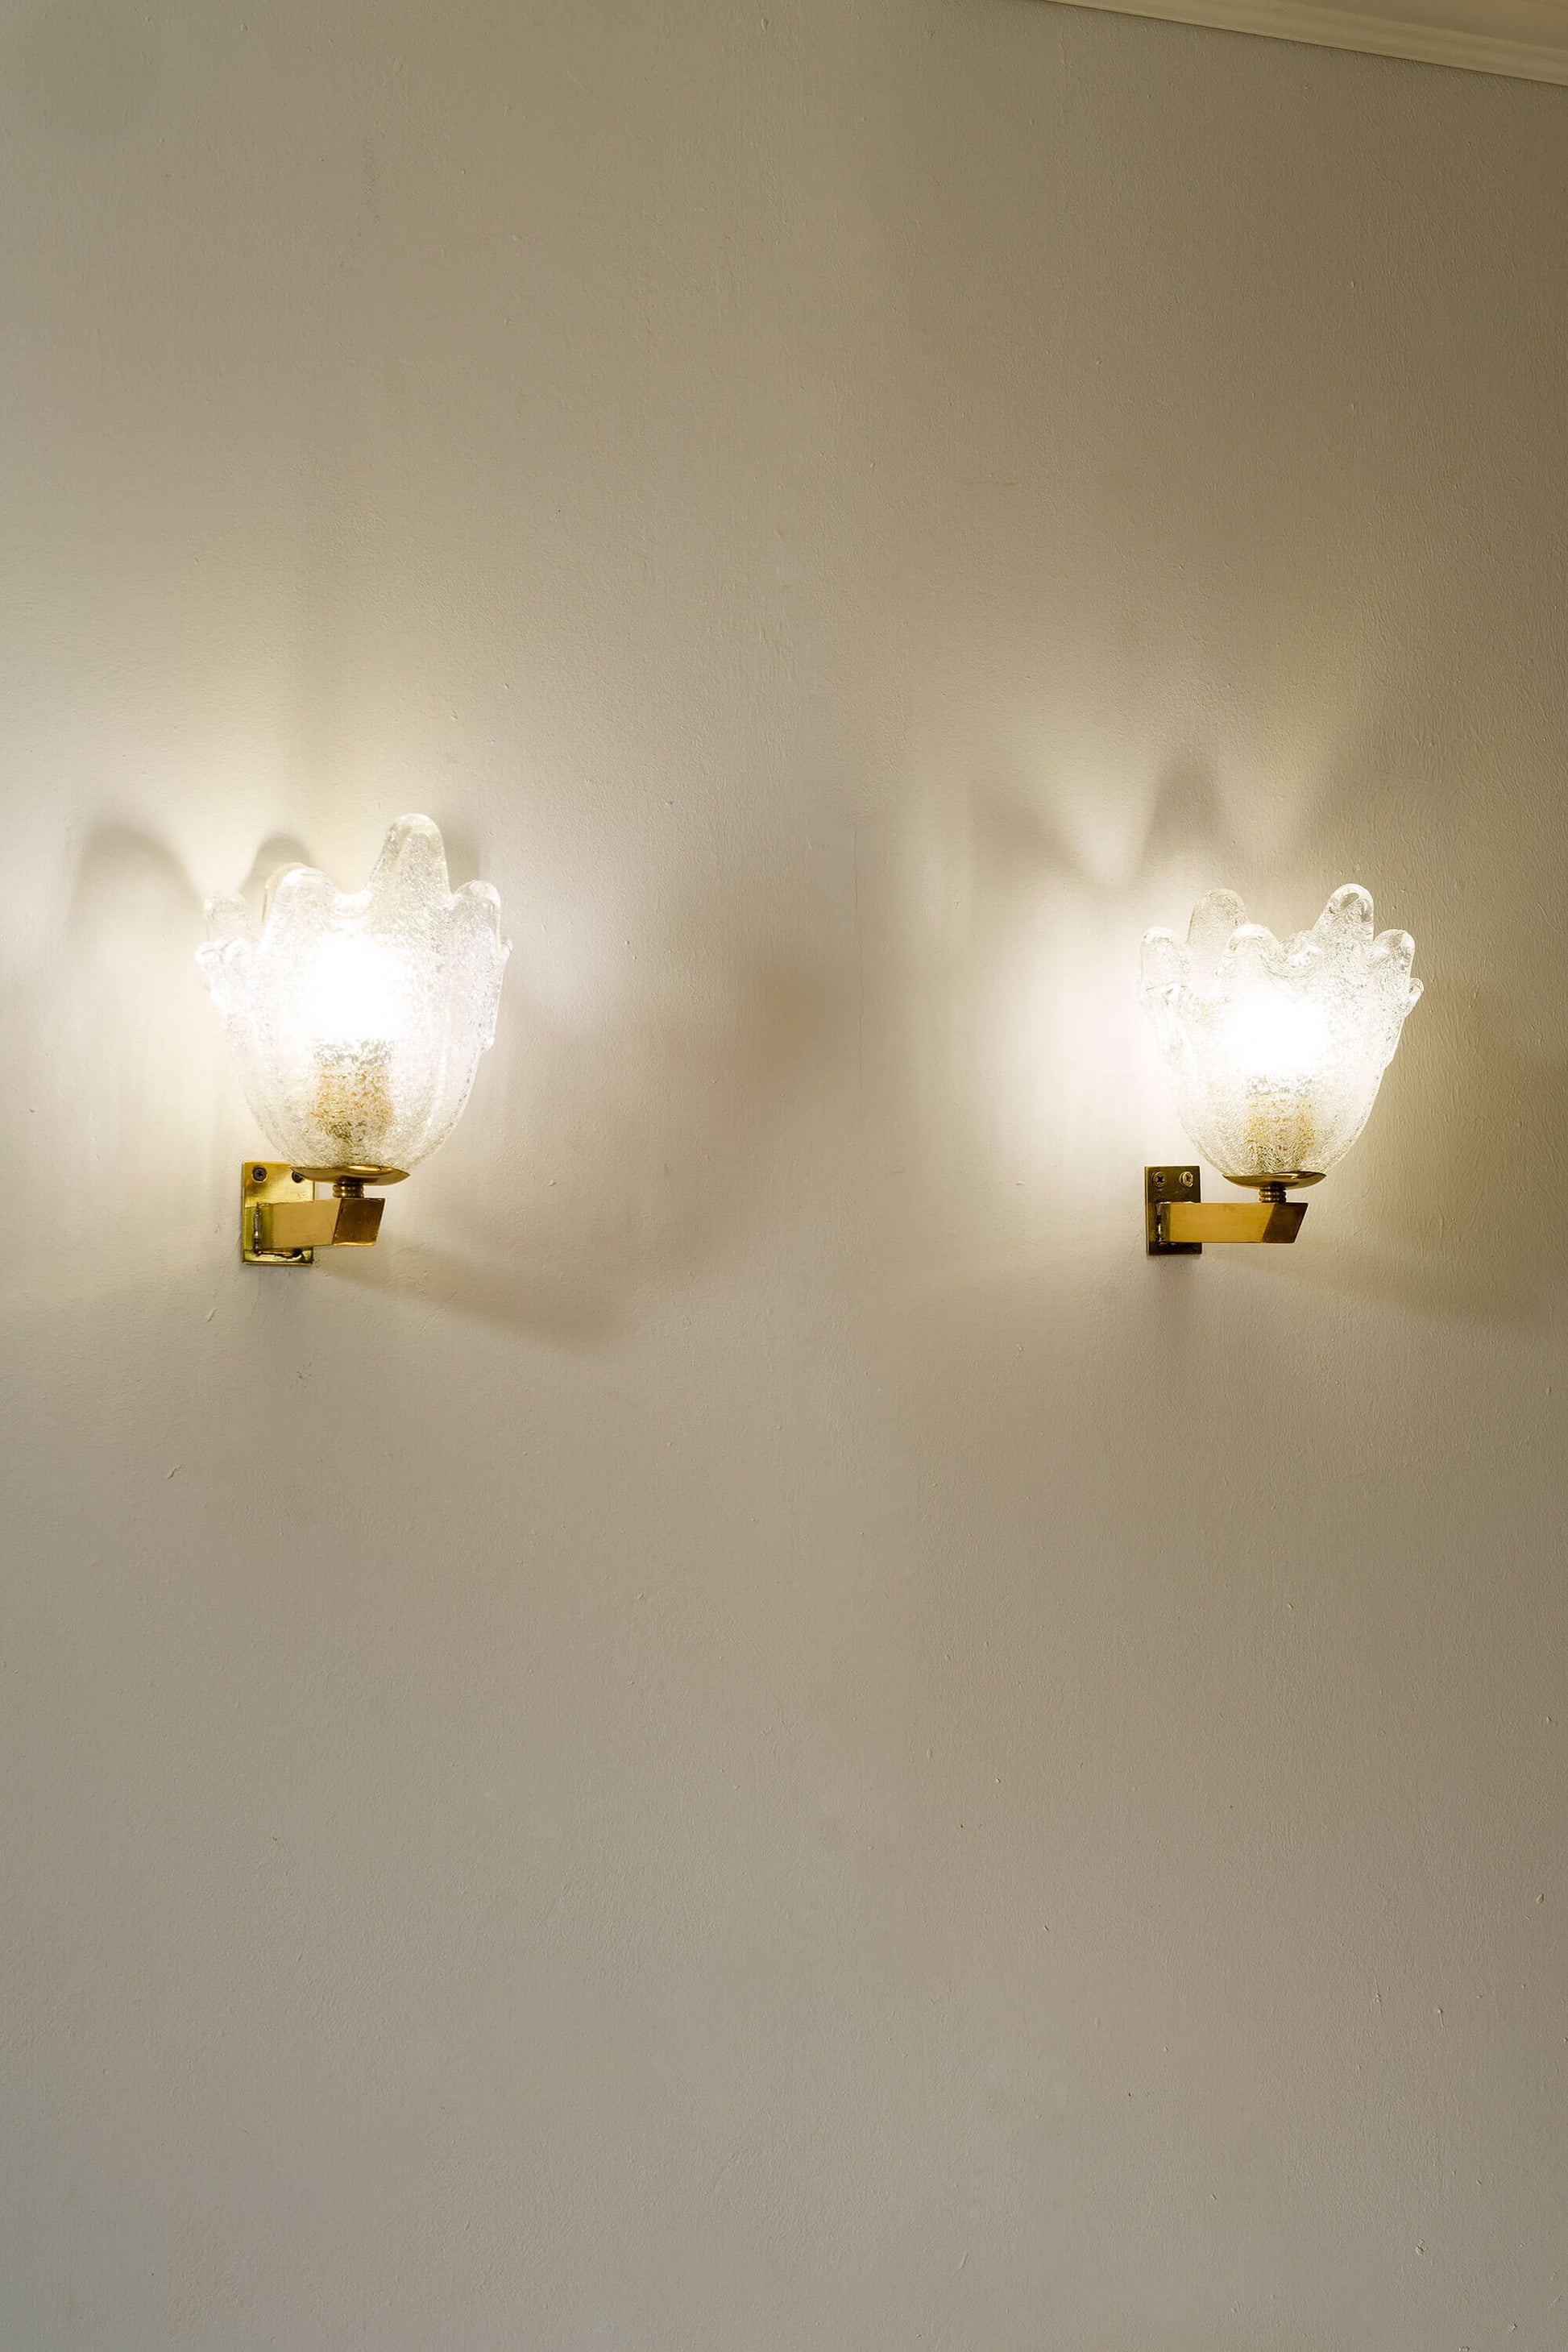 Lampade a muro vintage, create a mano da artigiani veneziani, con vetro di graniglia per una luminosità delicata.|Lo Stile Italiano